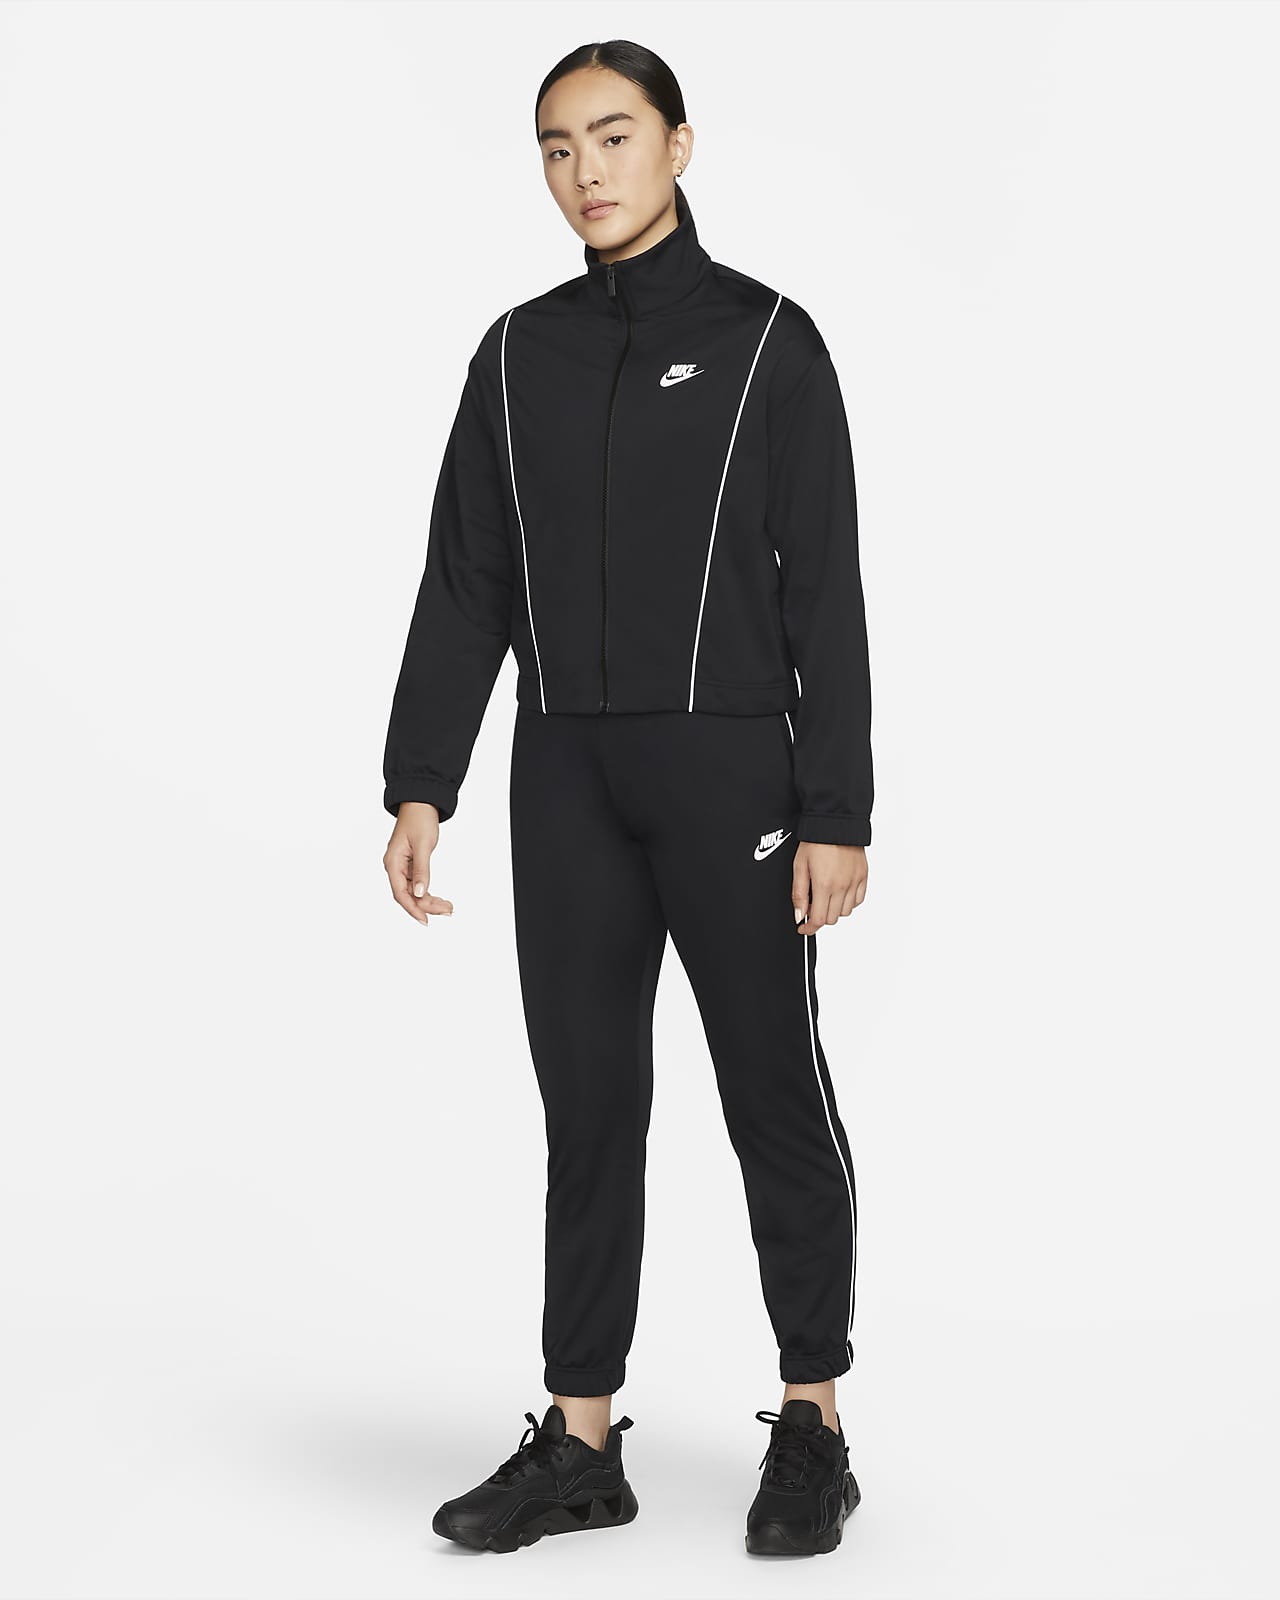 Nike Sportswear Women's Fitted Track Suit